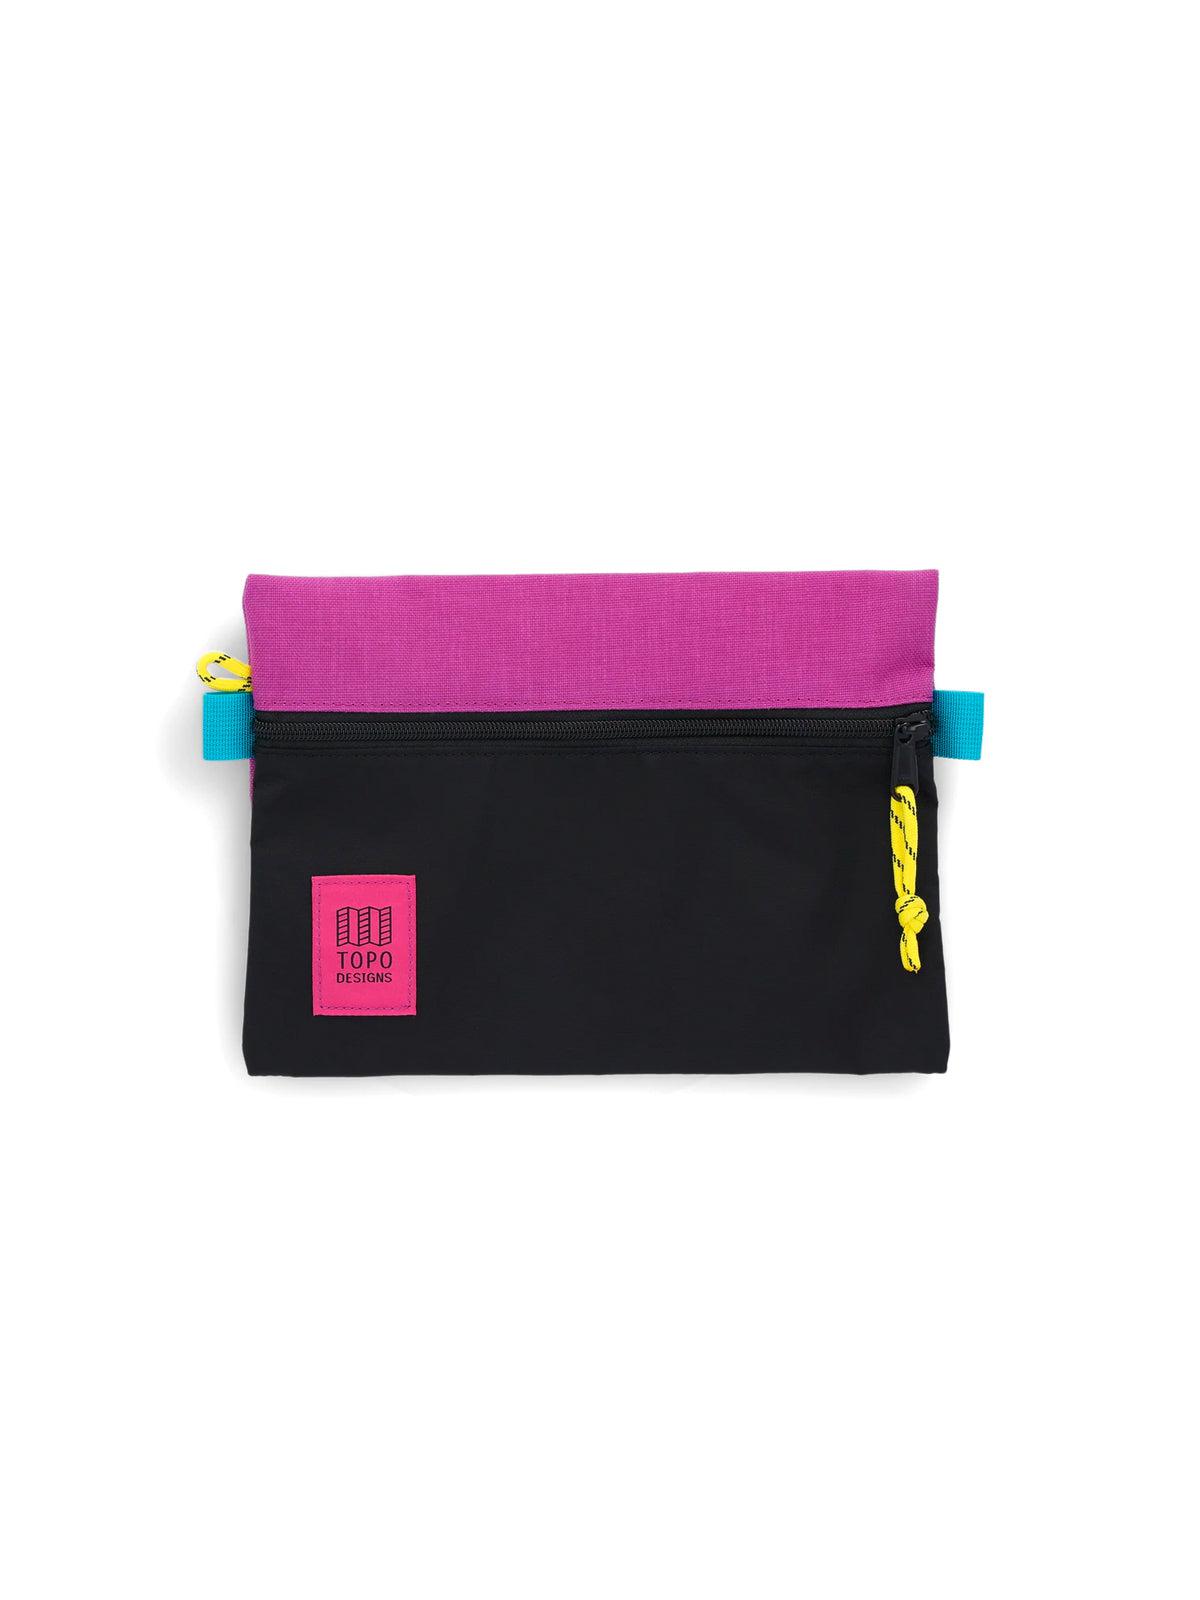 Topo Designs Accessory Bags Black Grape